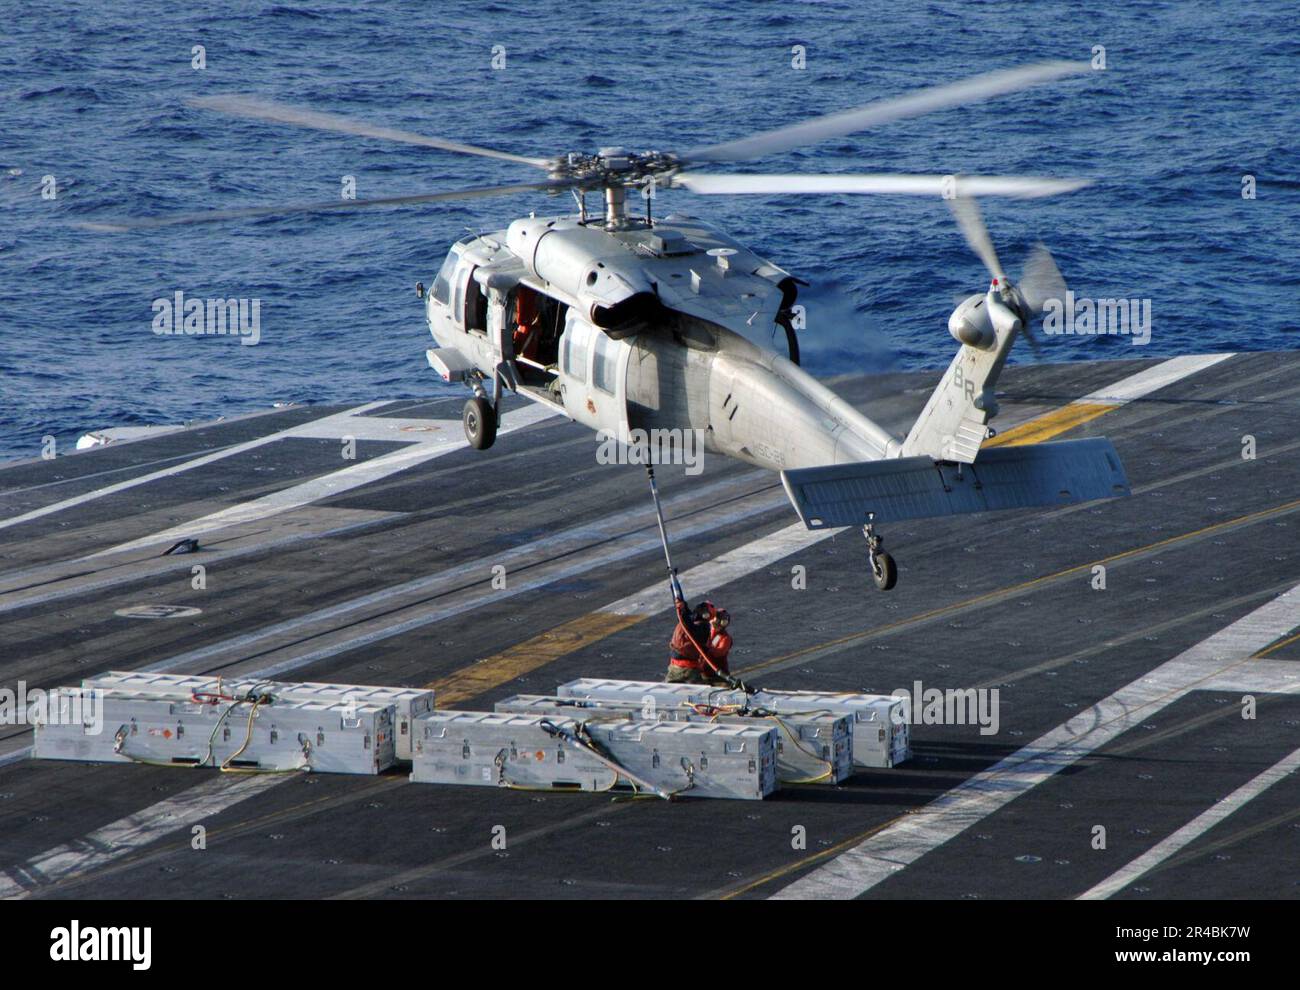 LES officiers de l'aviation DE LA Marine AMÉRICAINE attachent des munitions  à un hélicoptère MH-60s Seahawk, affecté au 2e Escadron de combat en mer  (HSC-28), sur le pont de vol du porte-avions